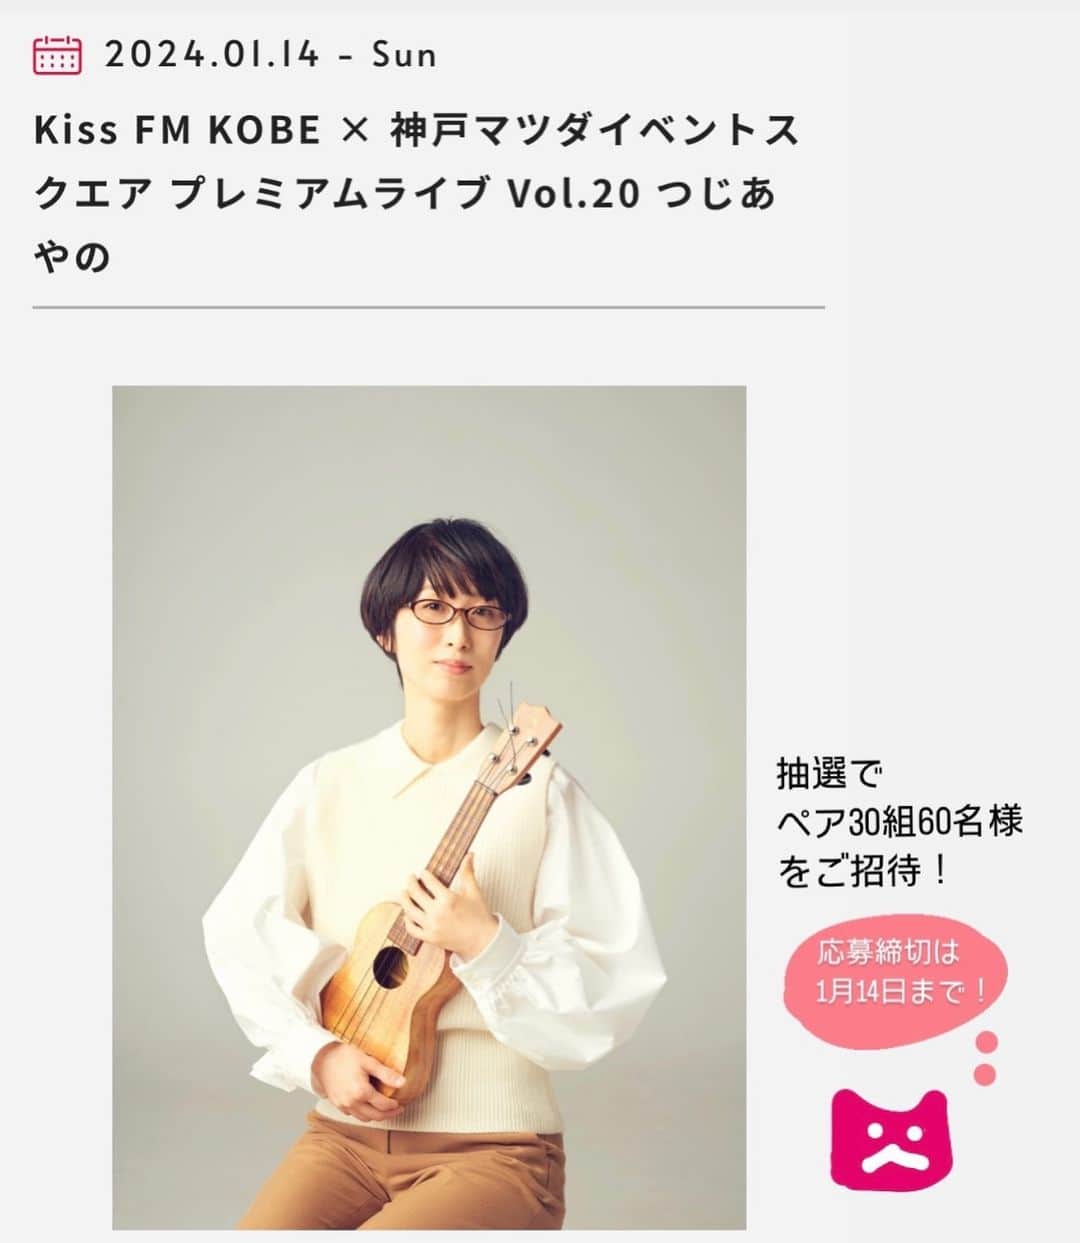 つじあやののインスタグラム：「おはようございます。来年1月のライブのお知らせです。2024年1月14日(日)に神戸マツダイベントスクエアで行われる『Kiss FM KOBE × 神戸マツダイベントスクエア プレミアムライブ Vol.20 つじあやの』に出演します。抽選による、ペア30組60名様の招待制ライブになりますので、みなさんぜひご応募くださいませ。応募締切は1月4日までです。神戸で歌えるの嬉しいな。4月の「アコースティックフェスティバル」ぶり。楽しみにしています！  Good morning.  This is a live announcement for January next year. I will be appearing at "Kiss FM KOBE x Kobe Mazda Event Square Premium Live Vol.20 Tsuji Ayano," which will be held at Kobe Mazda Event Square on Sunday, January 14, 2024. This event will be an invitation-only live performance with 30 pairs and 60 people selected by lottery, so everyone is encouraged to apply. The application deadline is January 4th. I'm happy to be able to sing in Kobe. I’m looking forward to it!   #ウクレレ弾き語り #ウクレレ#ウクレレ女子#つじあやの #ウクレレのある生活 #風になる #ウクレレ好きな人と繋がりたい #神戸 #kissfm #ukulelelove #ukulele #ukulelesongs  #ukuleles #ukulelemusic #ukulelelife」